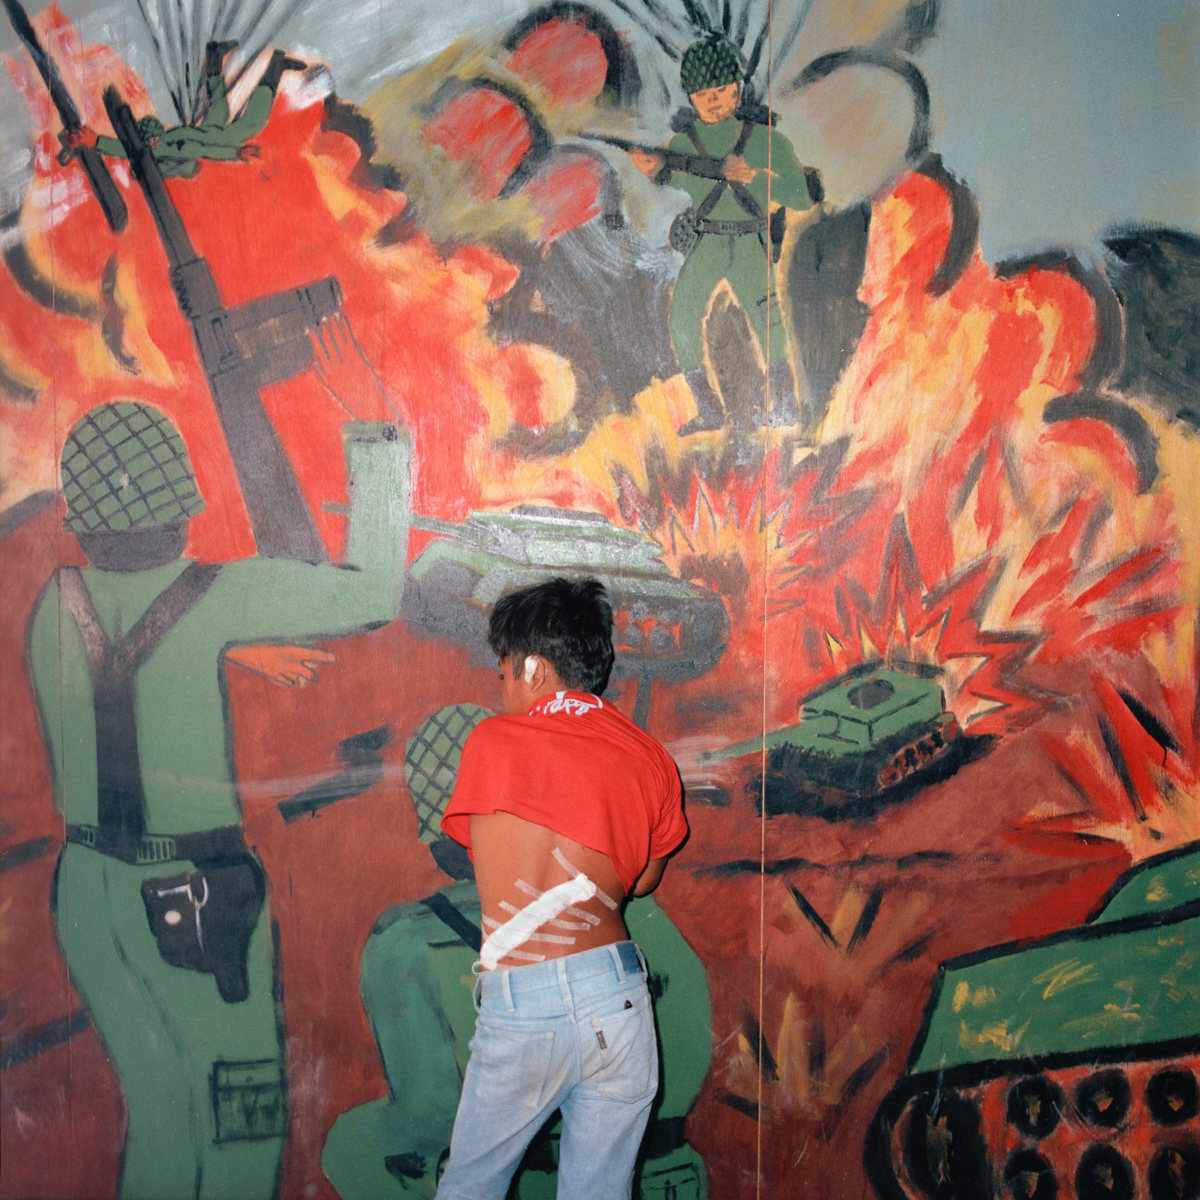 Injured Child, El Salvador 1986